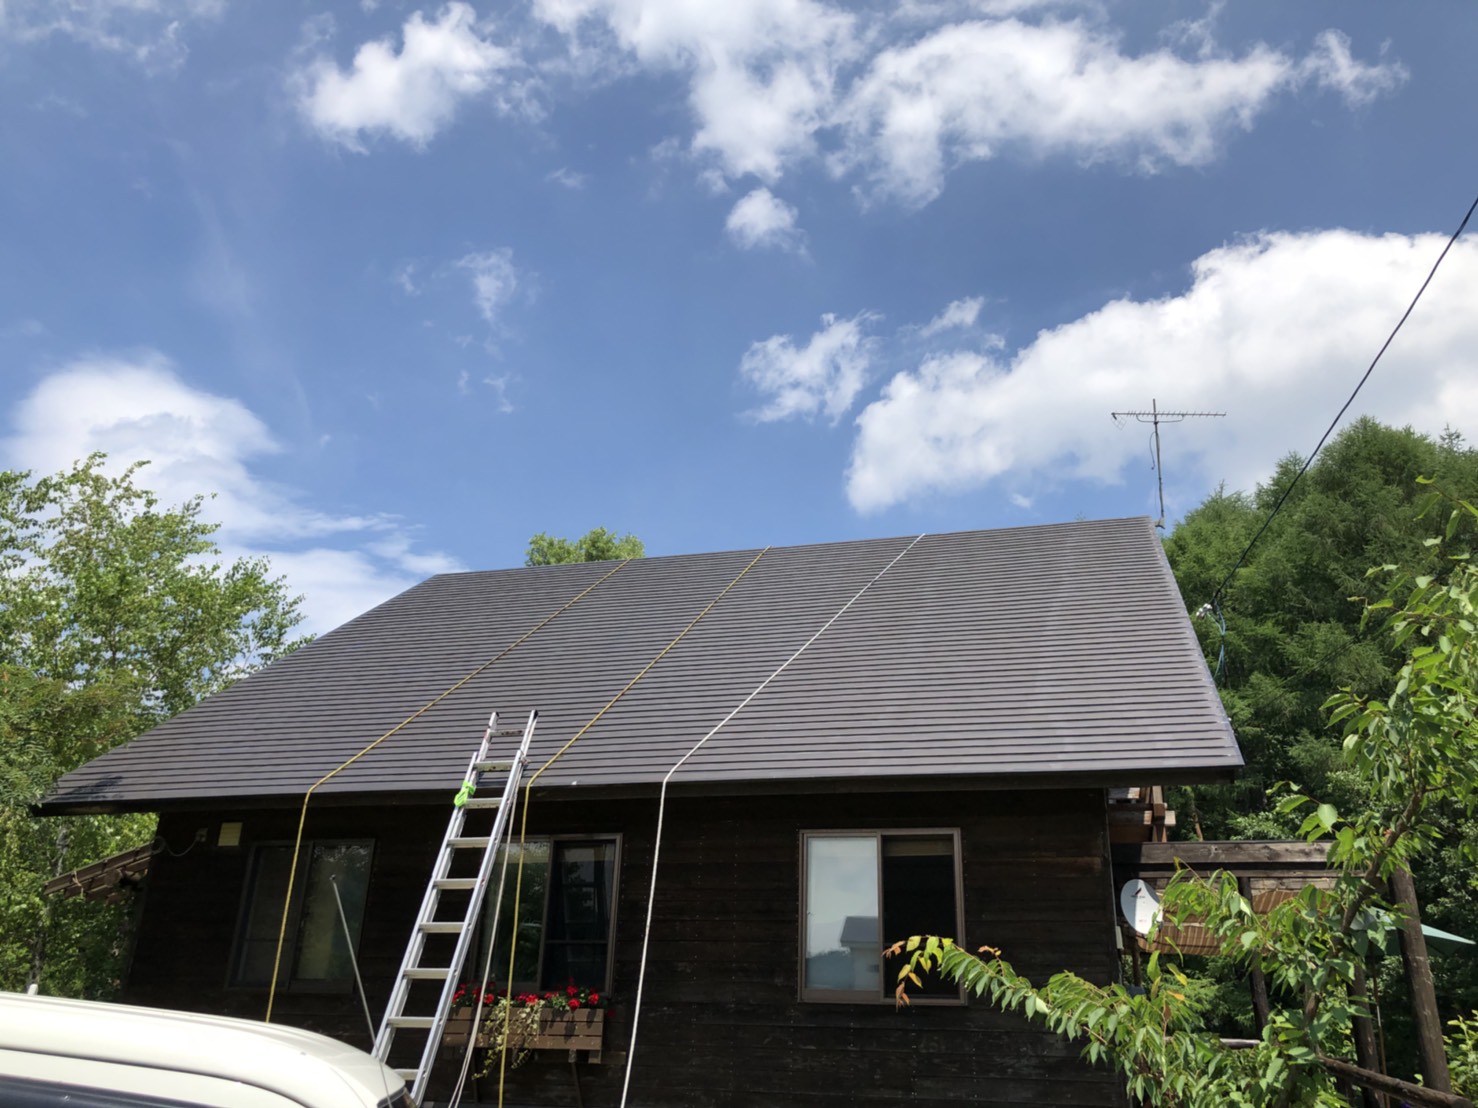 福島県耶麻郡北塩原村の別荘で、築20年経った屋根を塗り替えた外装リフォーム事例